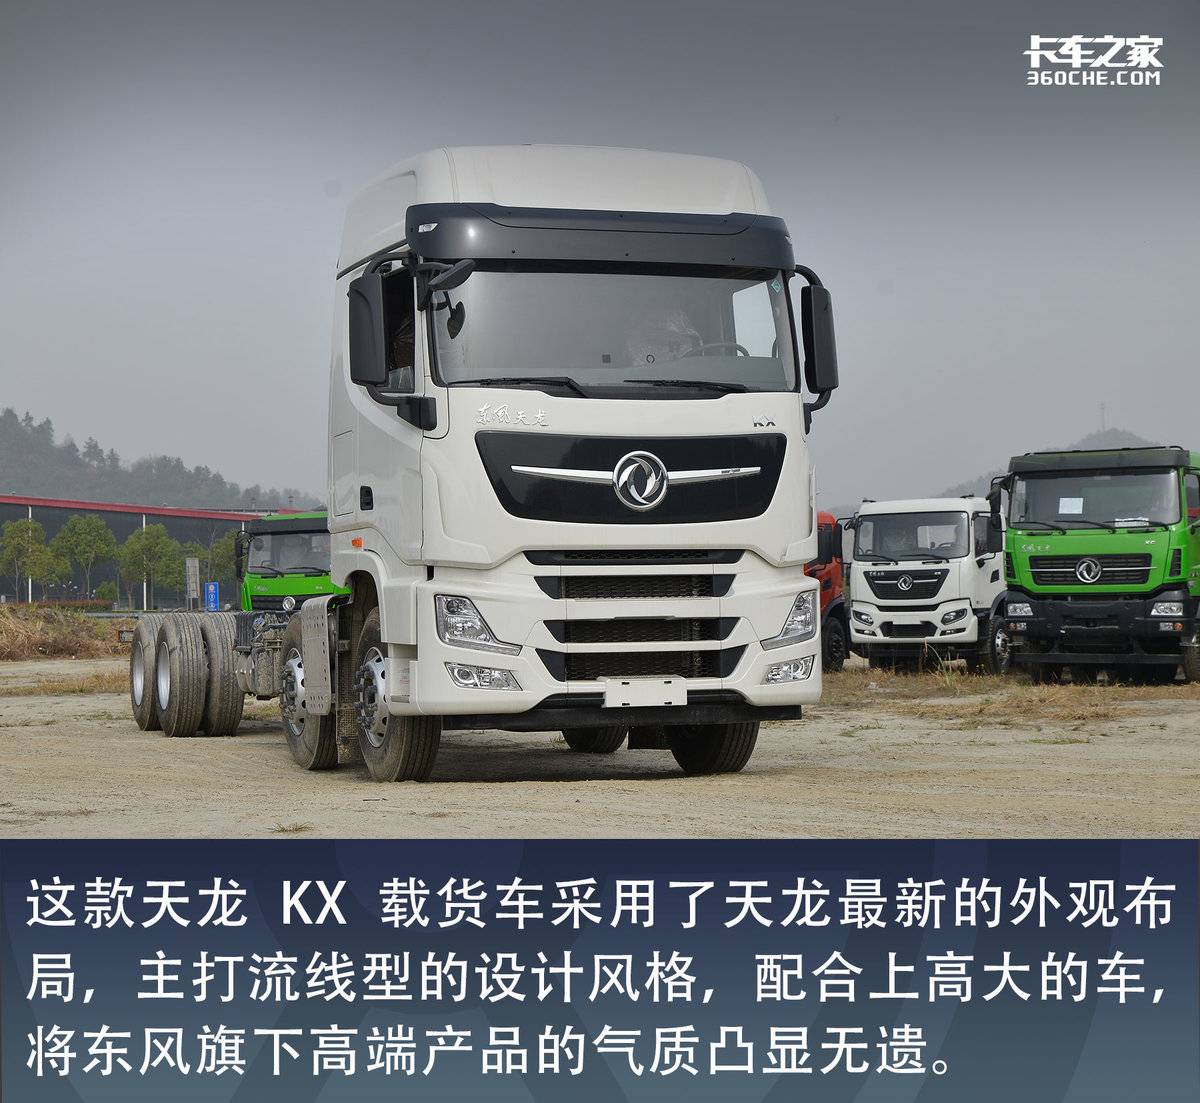 8x4载货车又有新选择 这款搭载龙擎发动机配备AMT的天龙KX不容错过